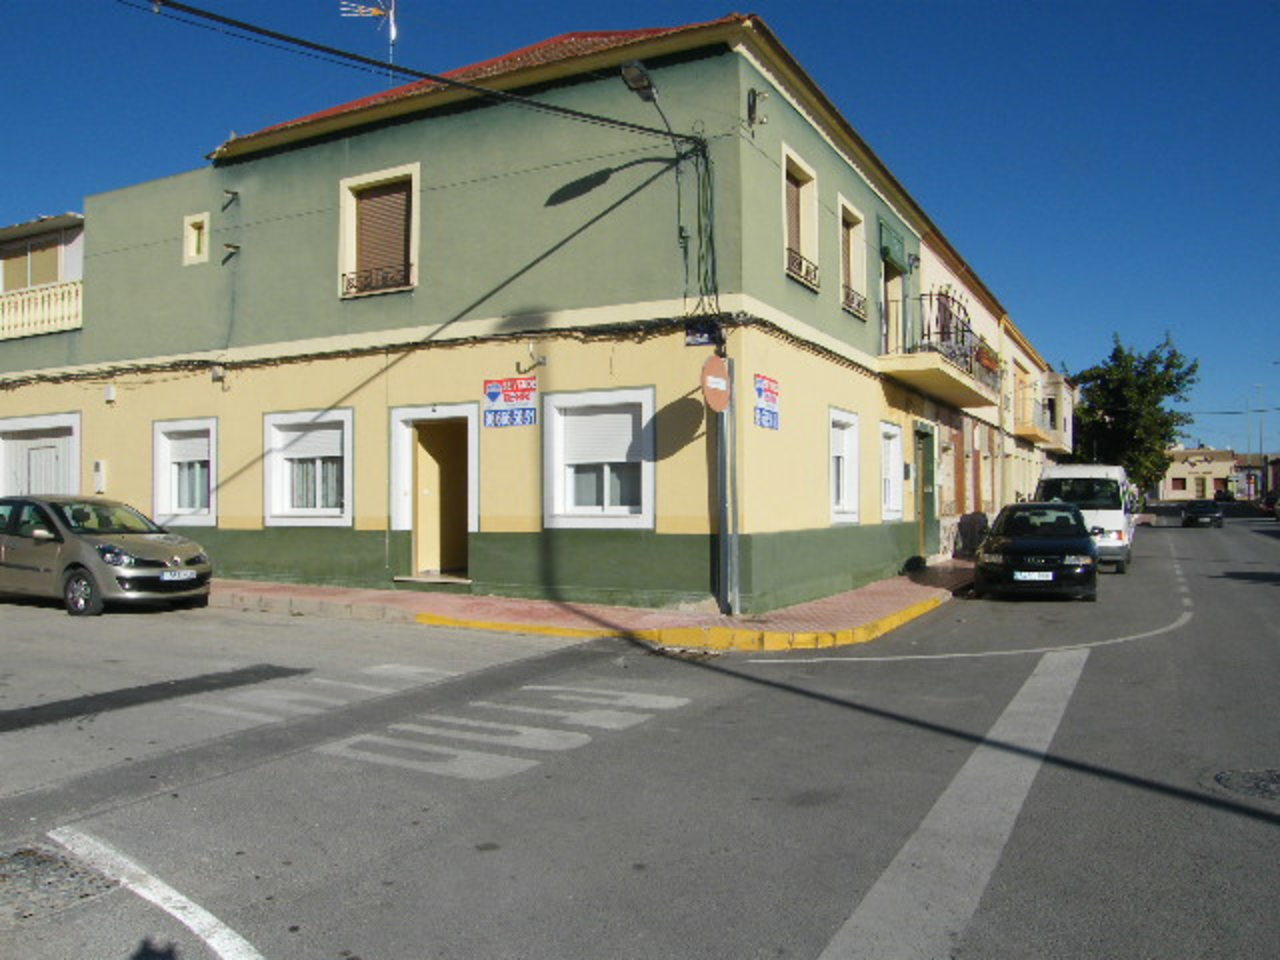 3 bedroom apartment / flat for sale in Daya Nueva, Costa Blanca